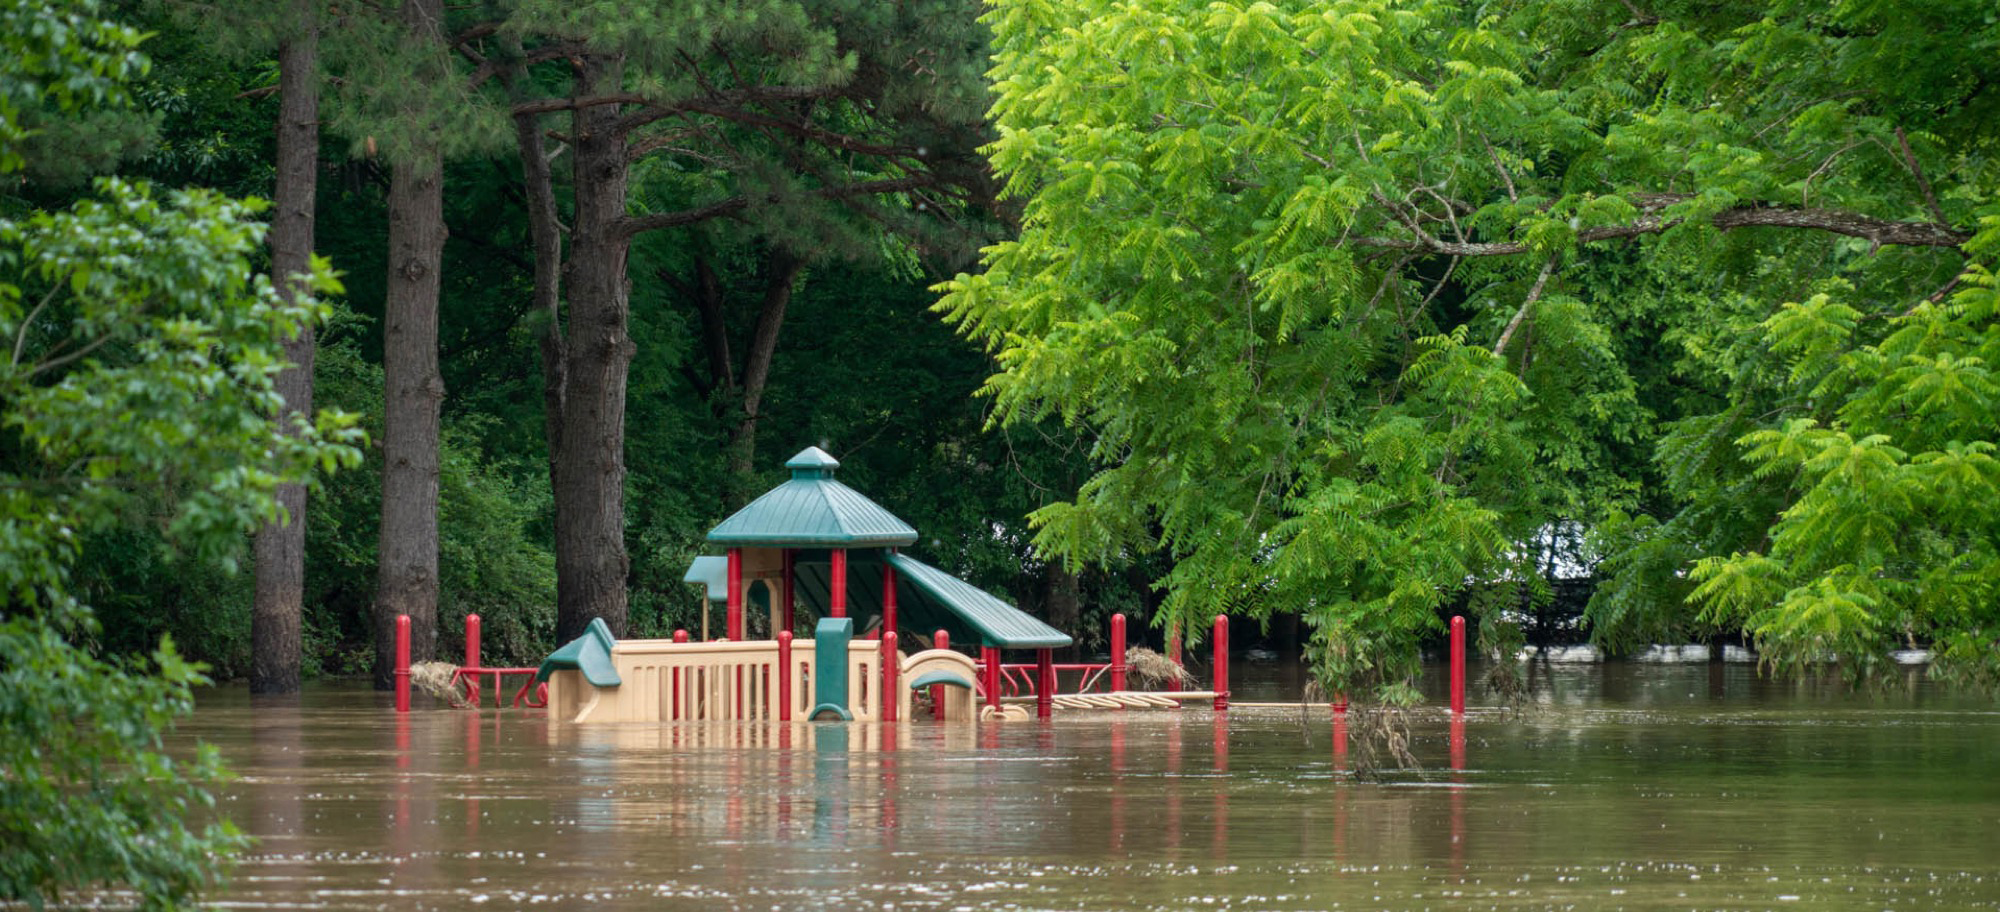 Playground under water after flood